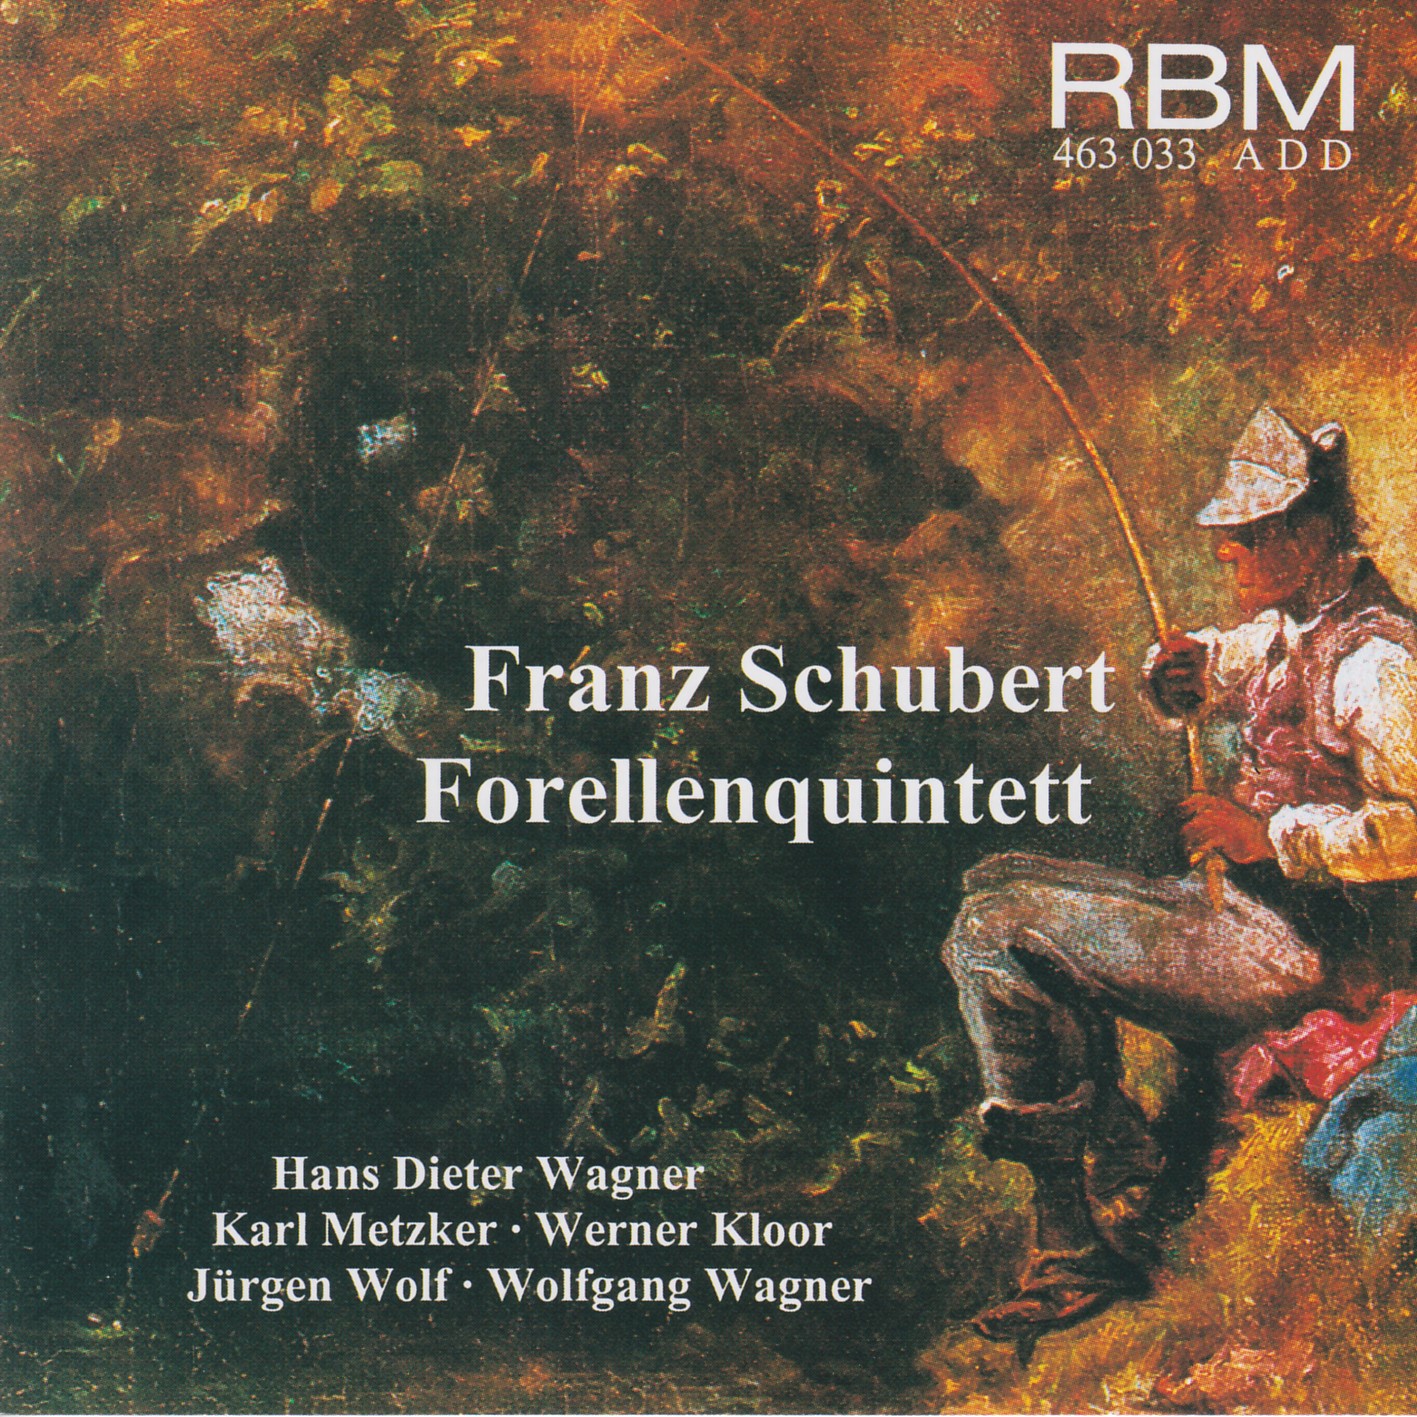 Franz Schubert - Forellenquintett